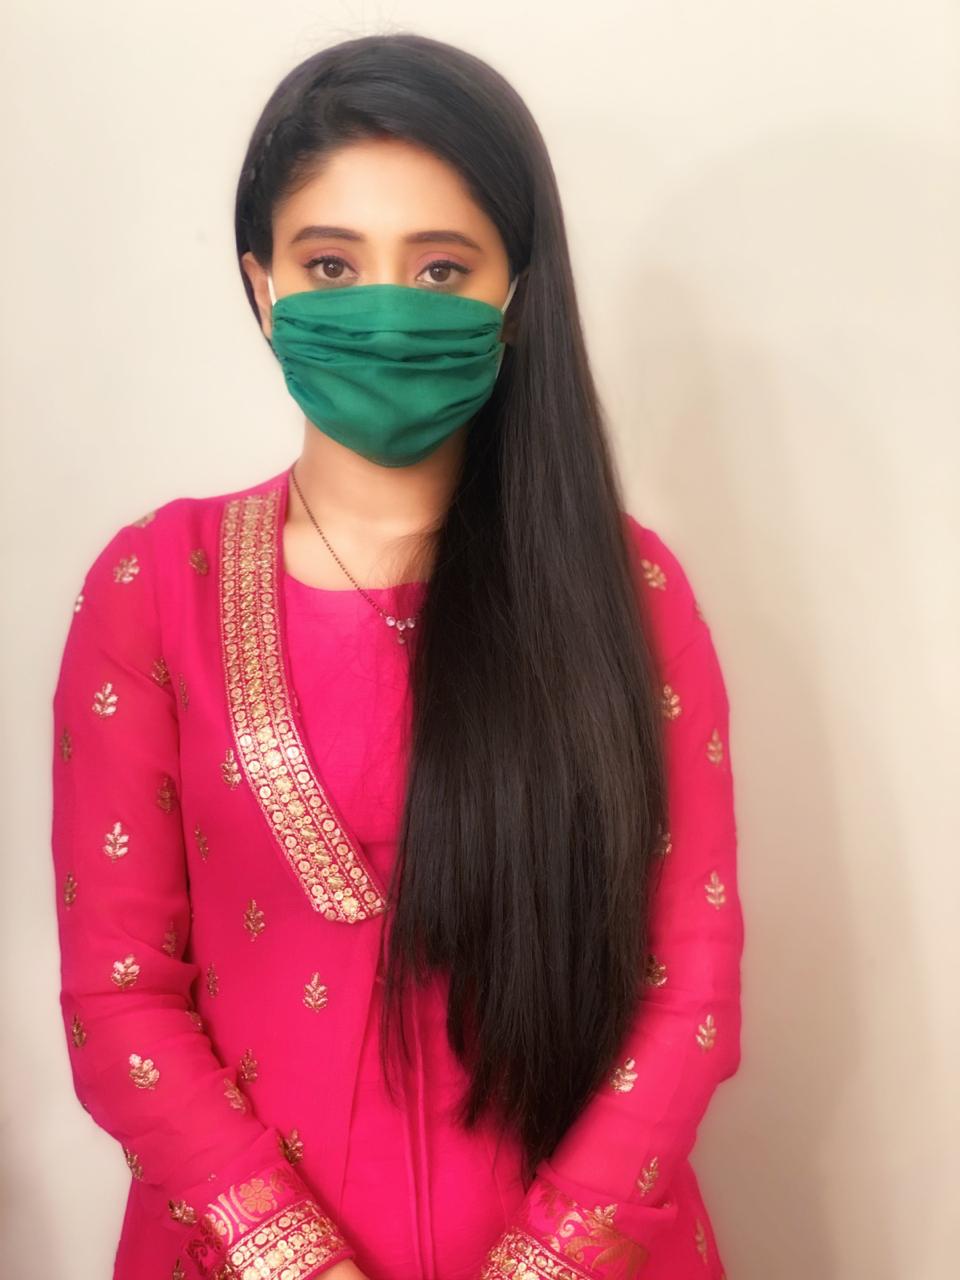 Shivangi Joshi plays safe with Coronavirus 1